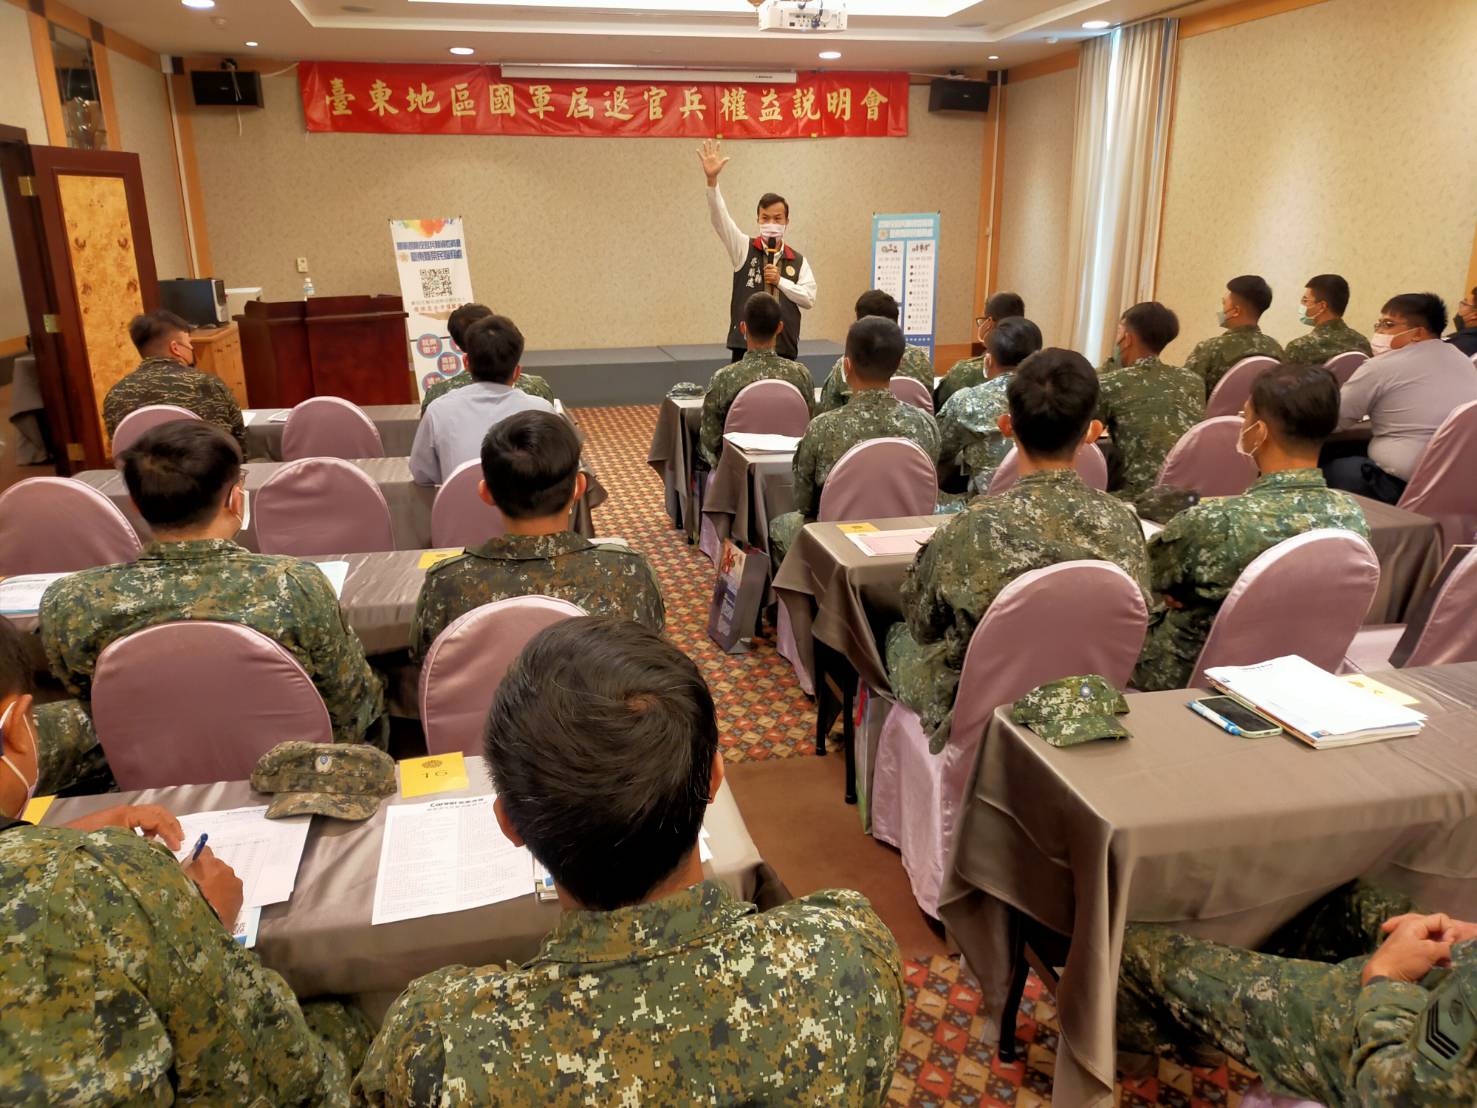 臺東地區第1季屆退官兵權益說明會 榮服處提供就學就業職訓服務